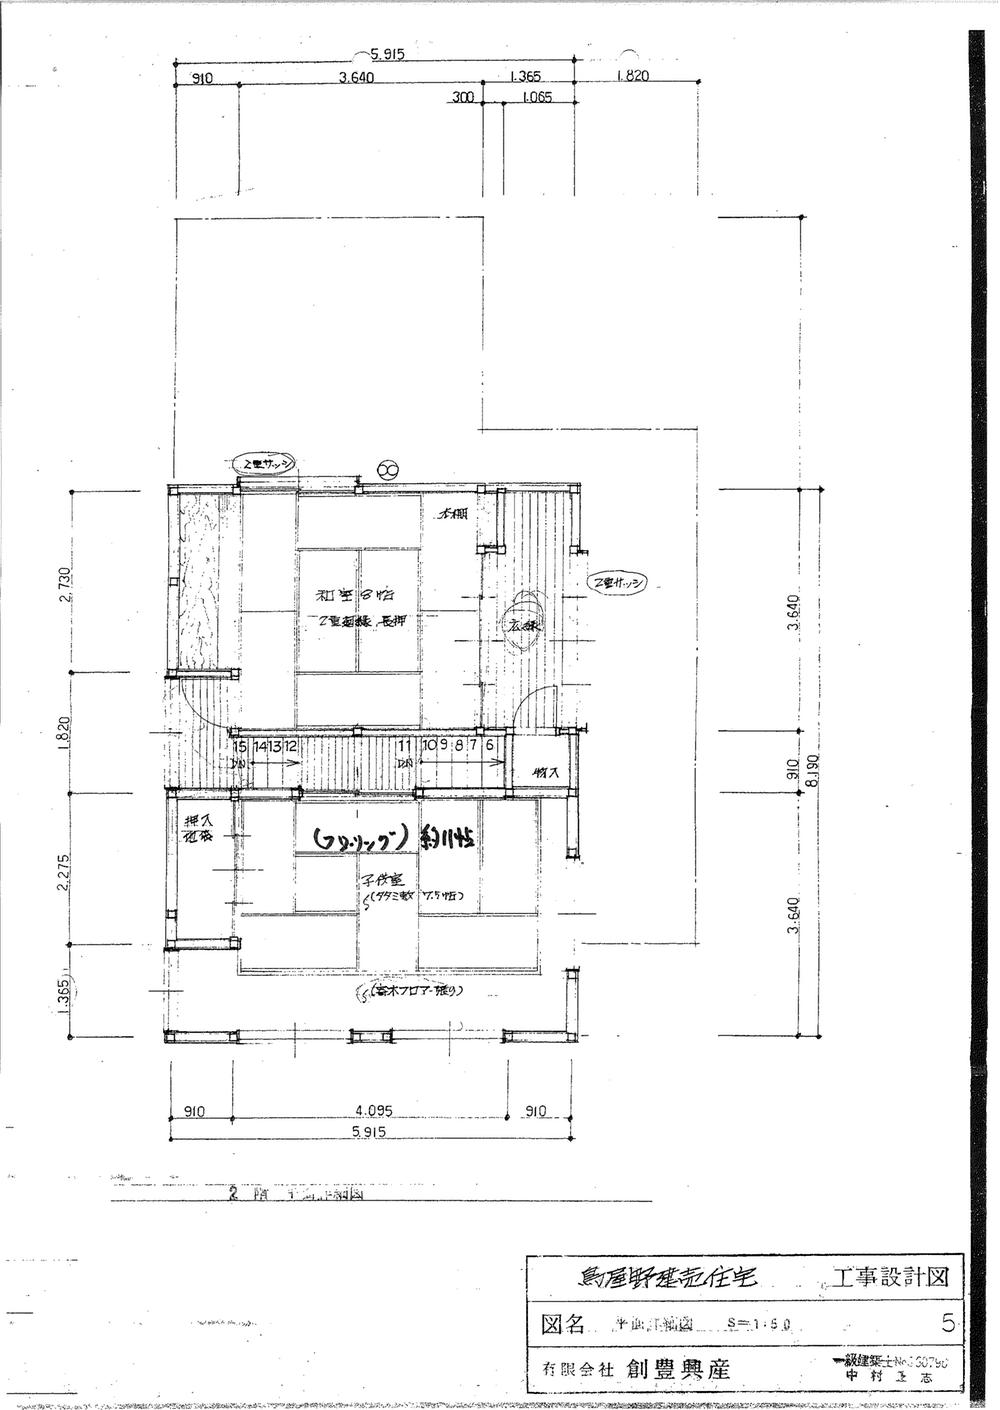 Floor plan. 13.5 million yen, 3LDK, Land area 136.99 sq m , Building area 130.71 sq m